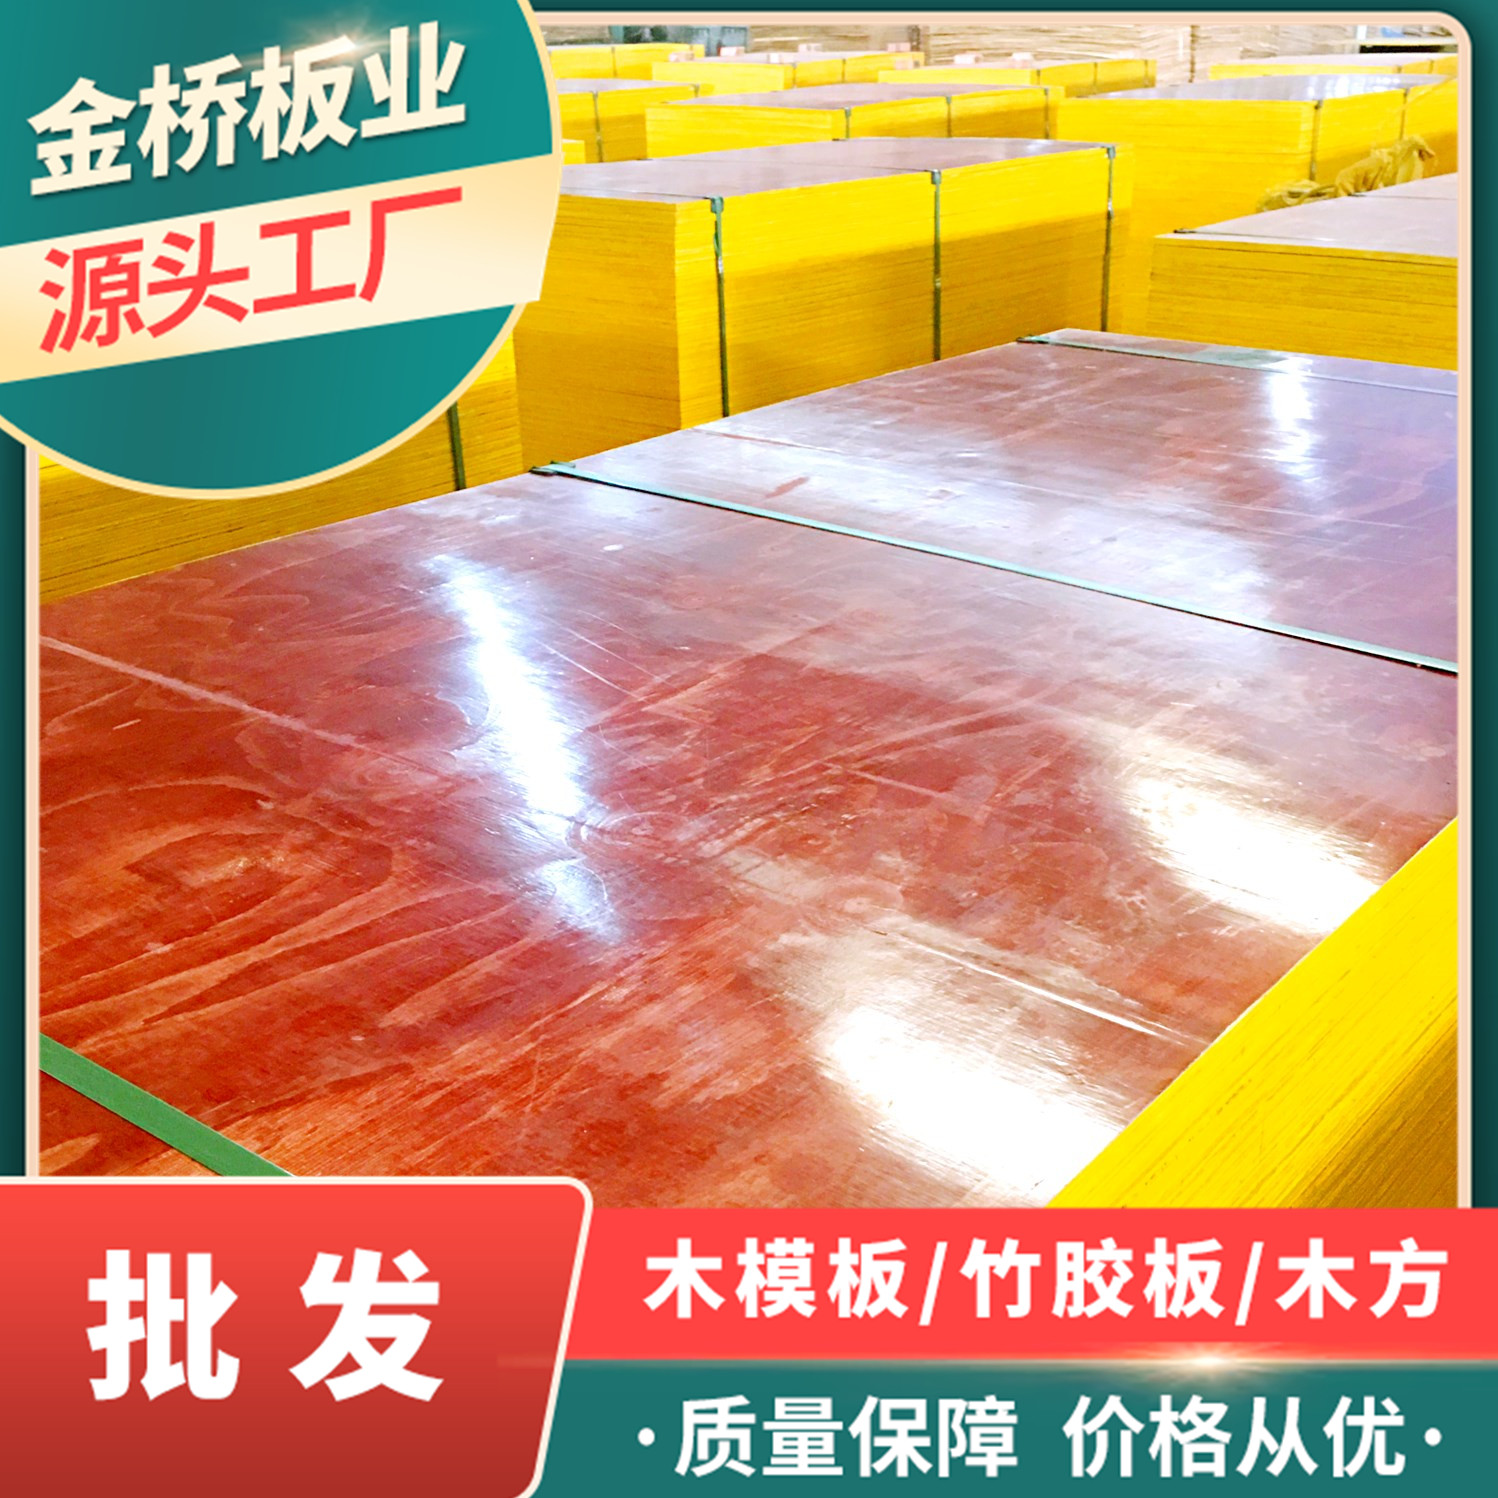 湖南岳阳建筑模板批发厂家金桥板业供应红模板 覆膜模板 质优价美